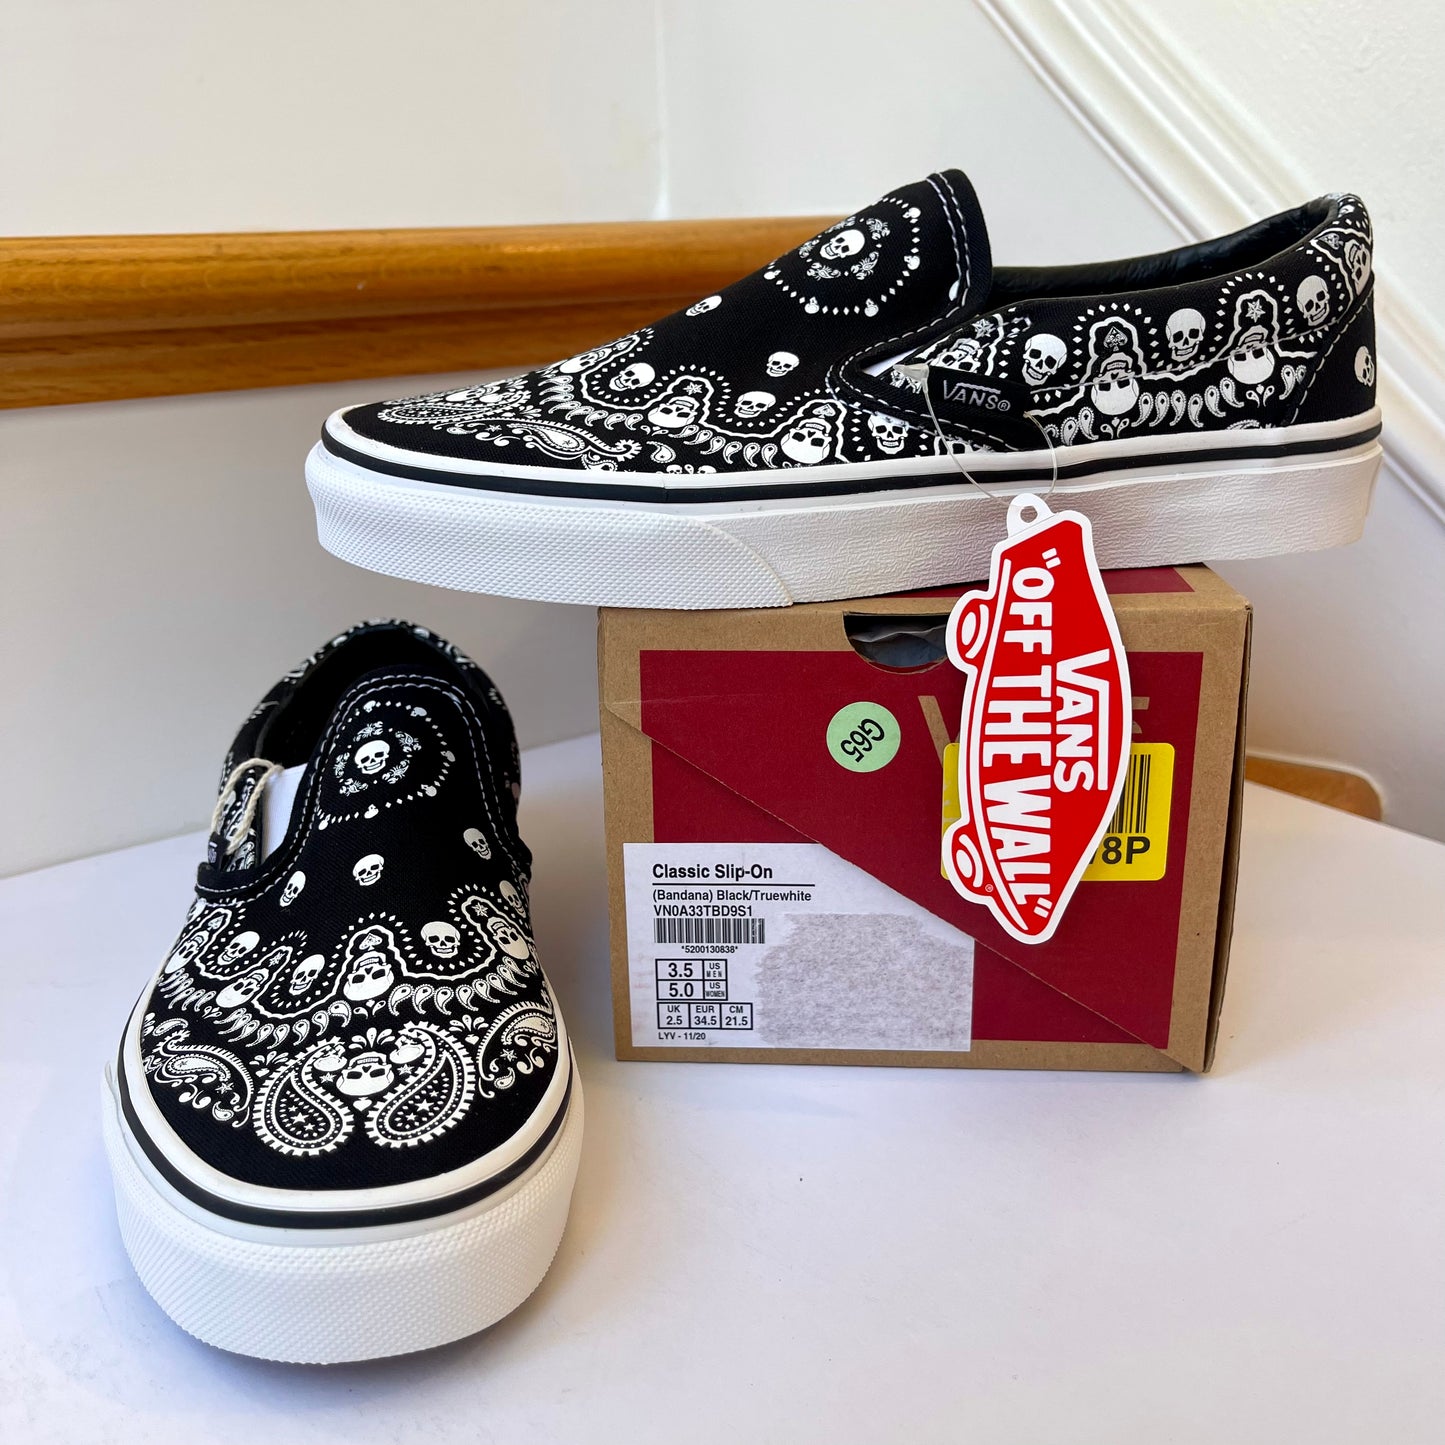 Vans Classic Slip On shoes in black / white bandana skull skate sneaker